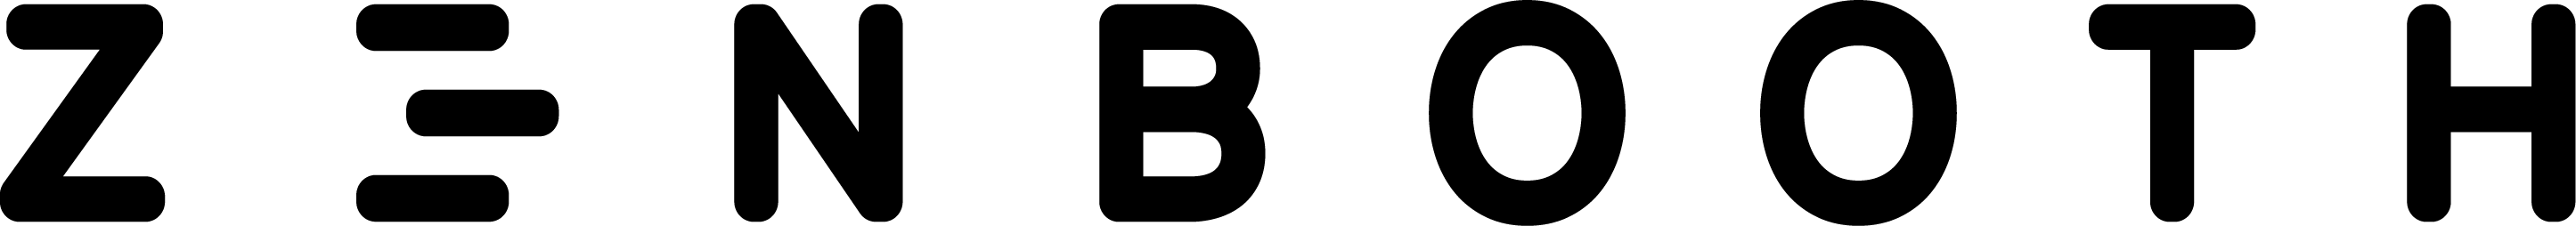 Zenbooth logo